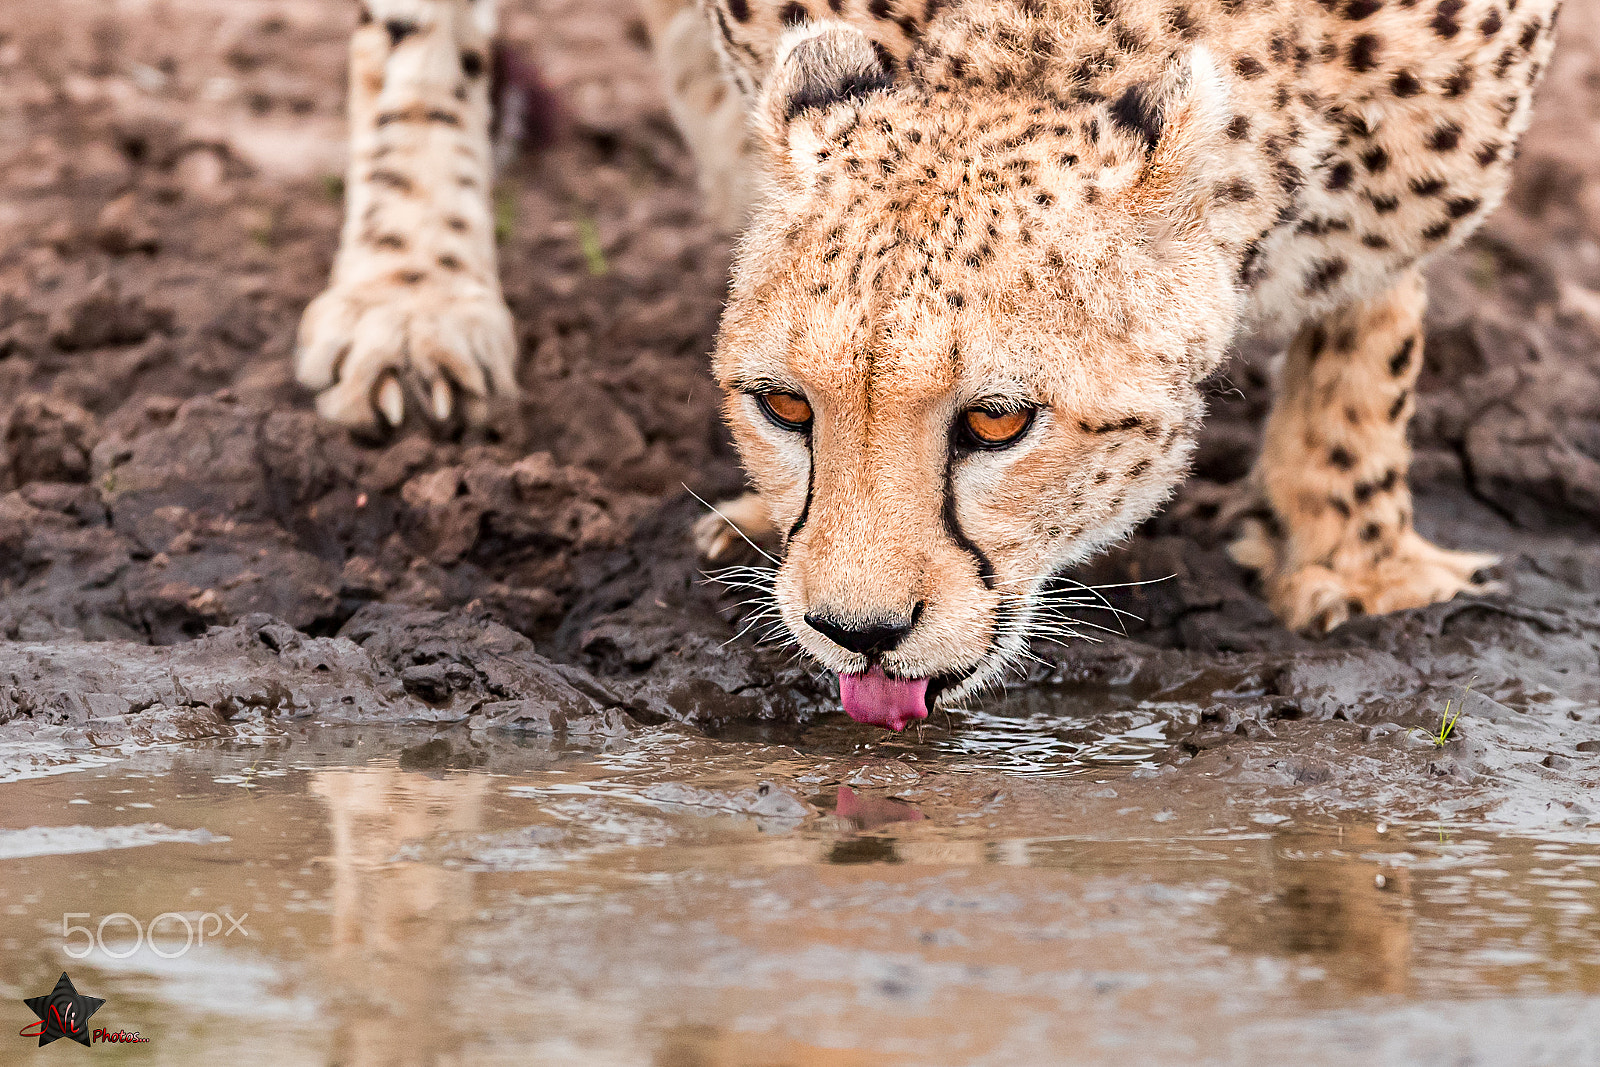 Nikon D5 sample photo. Cheetah drinking water photography